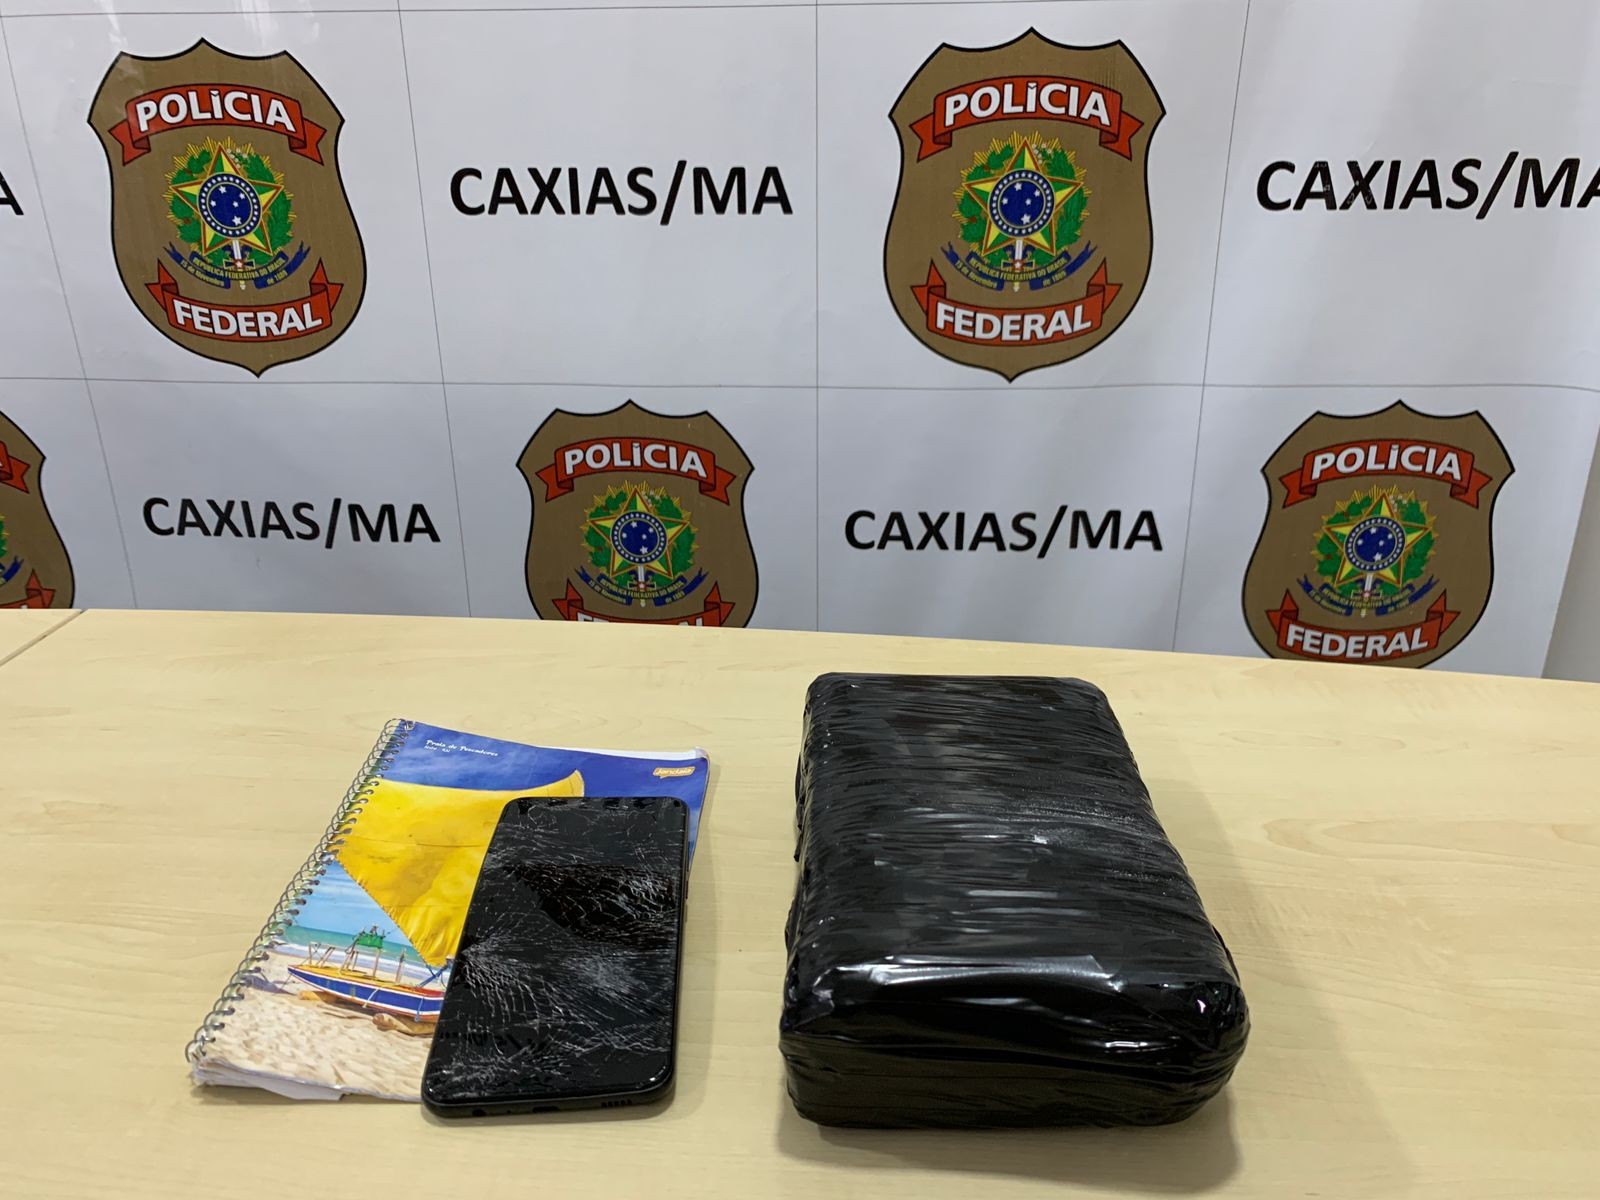 Homem recebe cocaína pelos Correios e acaba preso pela Polícia Federal, em Caxias, no Maranhão